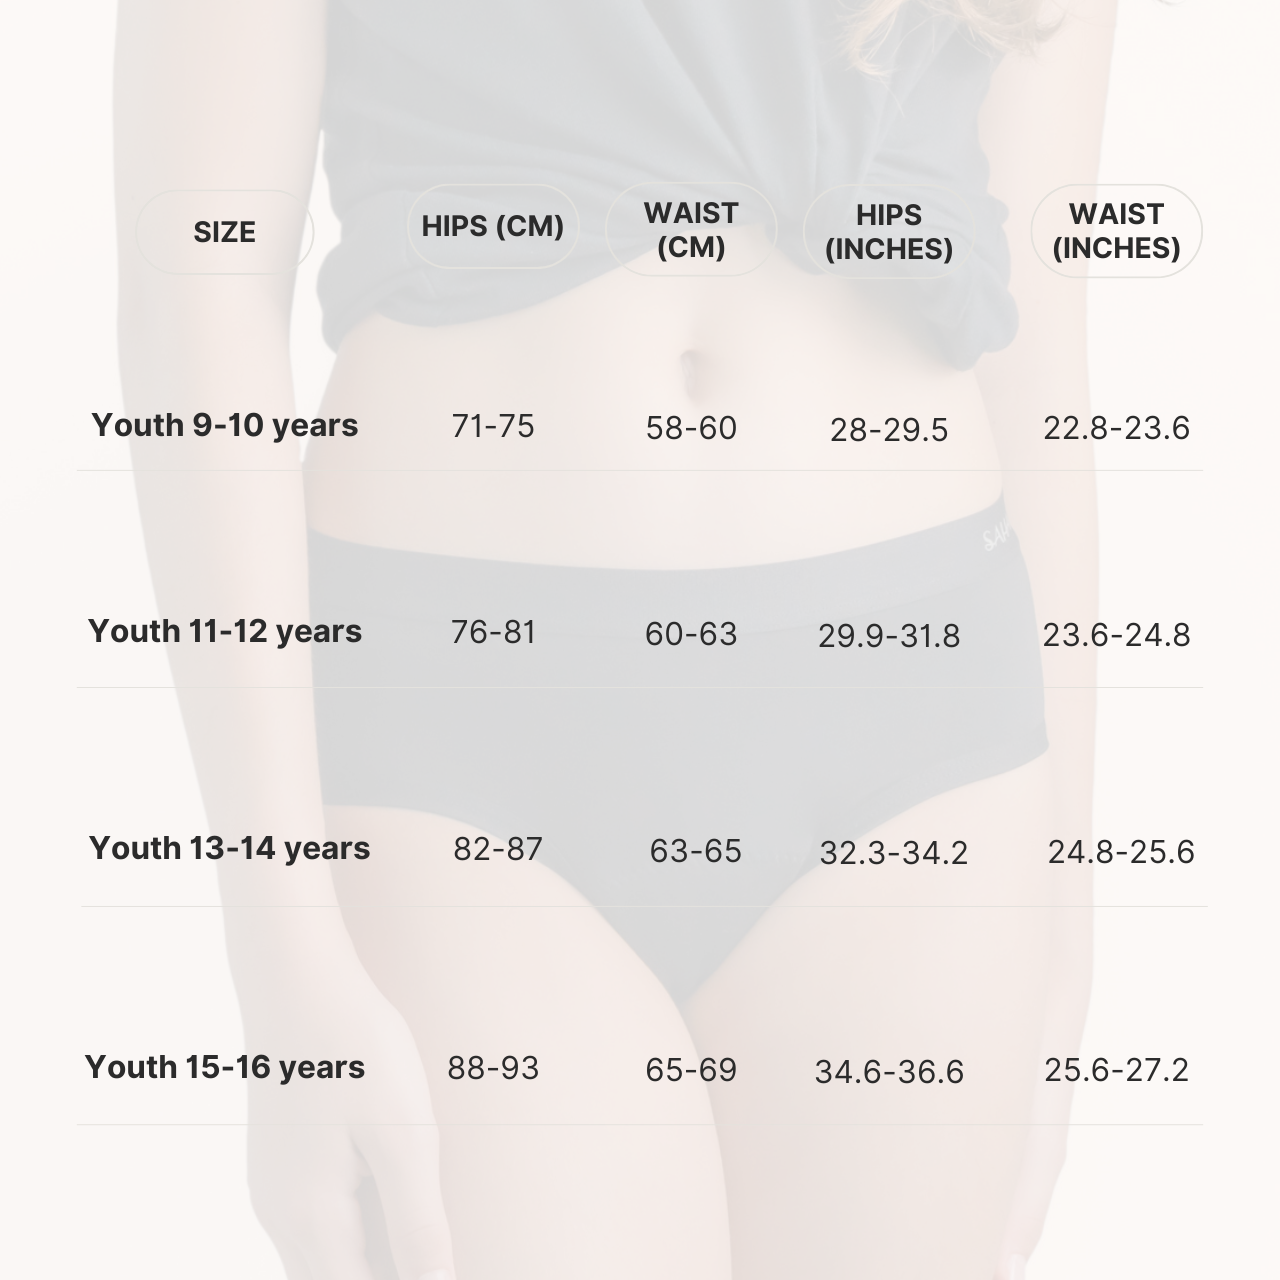 ملابس داخلية مقاومة للدورة الشهرية من صحارى للمراهقين، قدرة متوسطة على الامتصاص - للأعمار من 15 إلى 16 عامًا